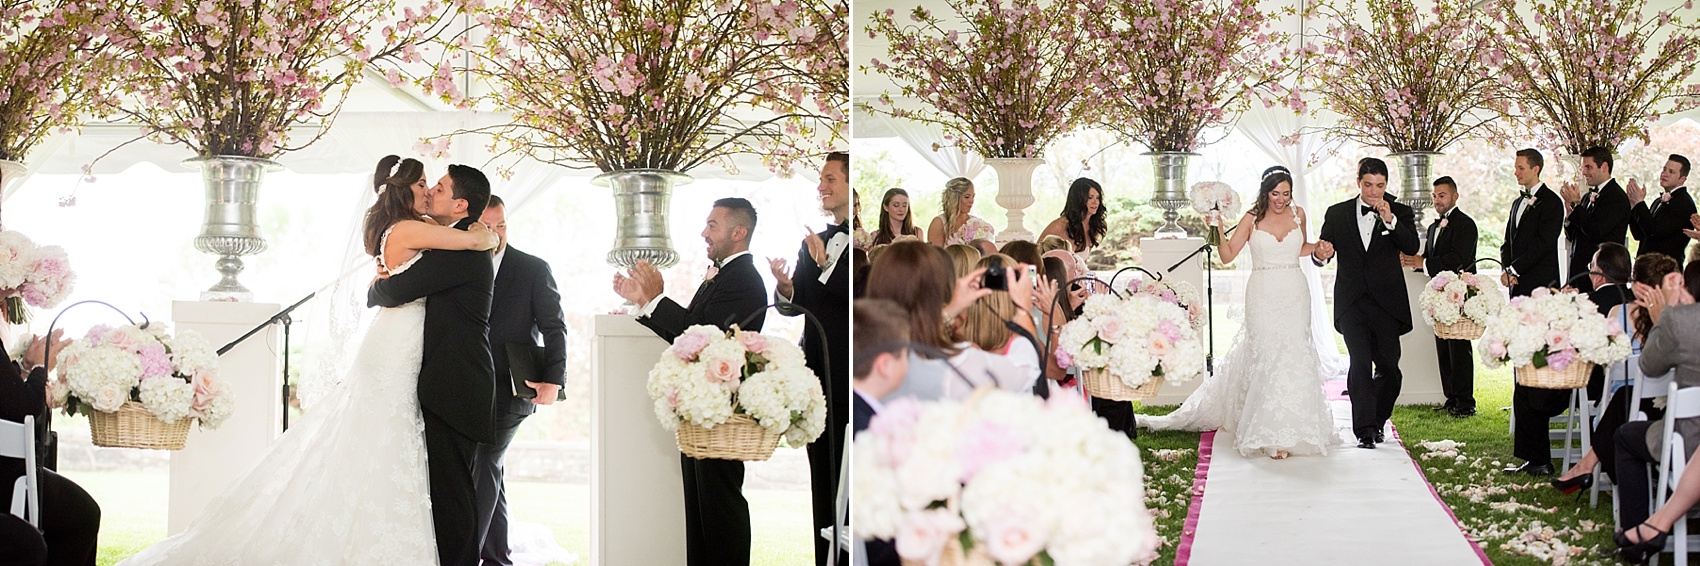 Skylands Manor wedding ceremony. Images by Mikkel Paige Photography, NJ wedding photographer.